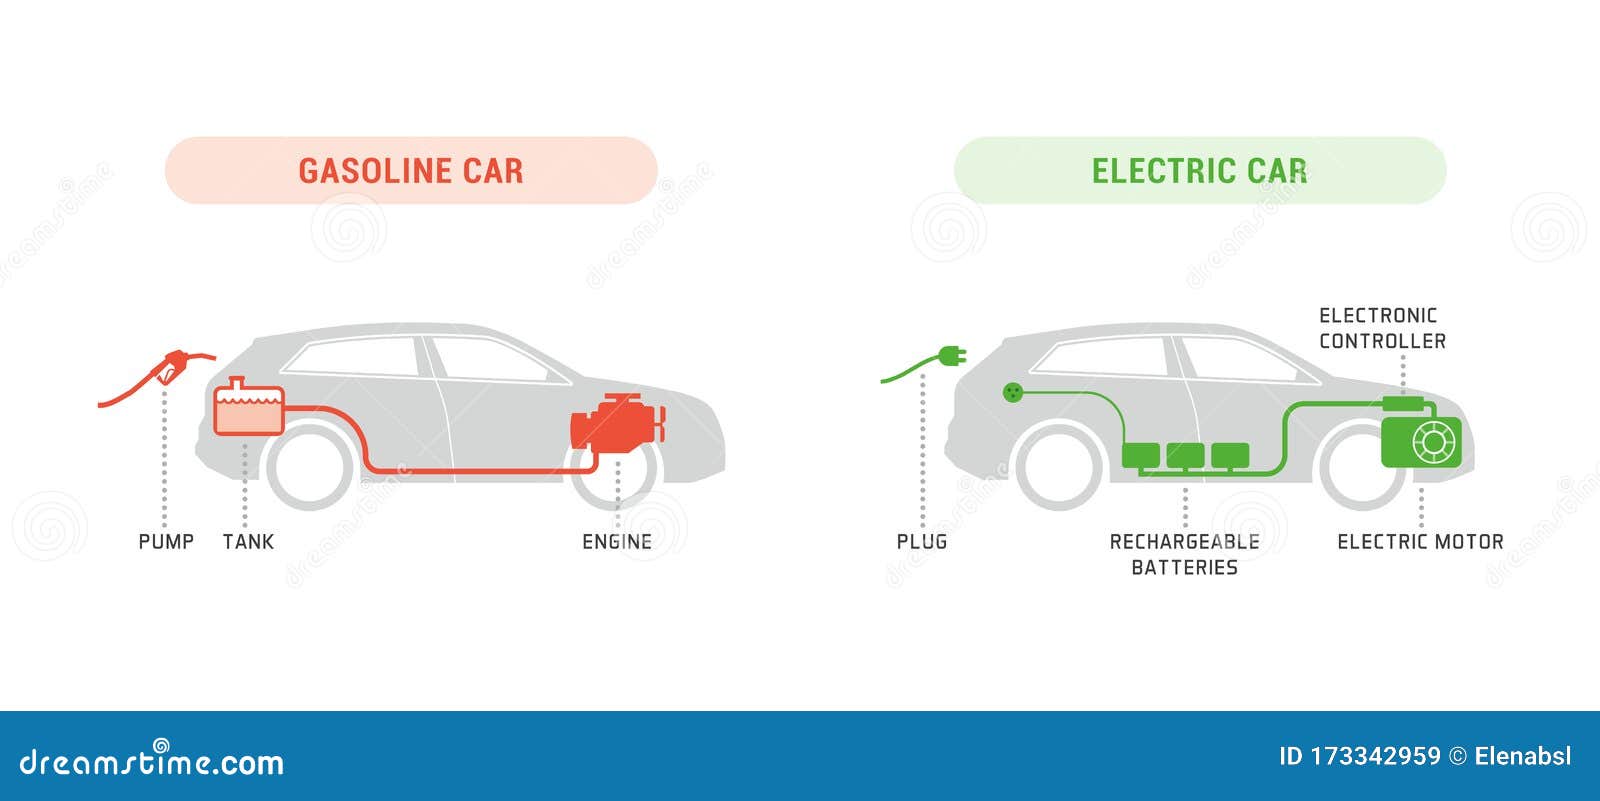 Conoce las diferencias entre coches RC eléctricos y gasolina!